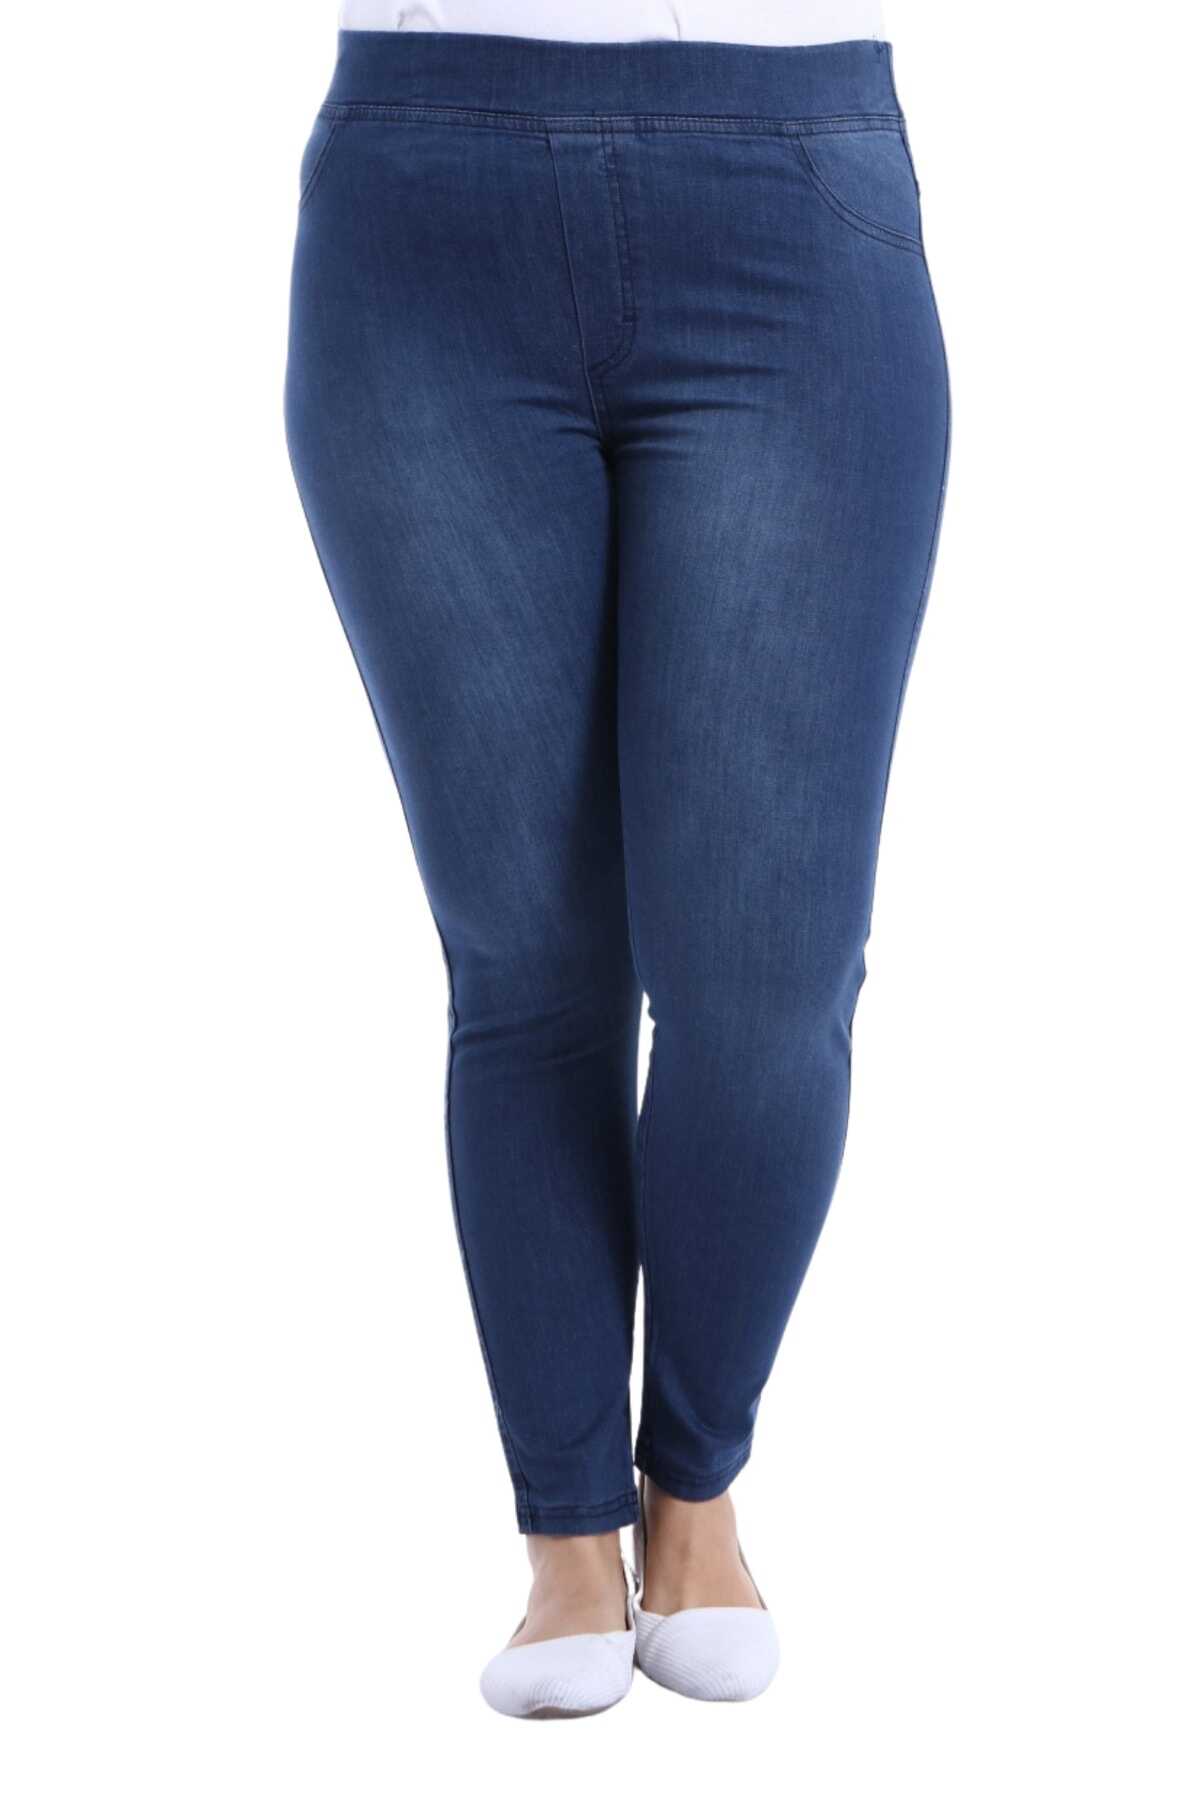 شلوار جین لوله ای کمر کش سایز بزرگ زنانه آبی تیره برند AZEM 